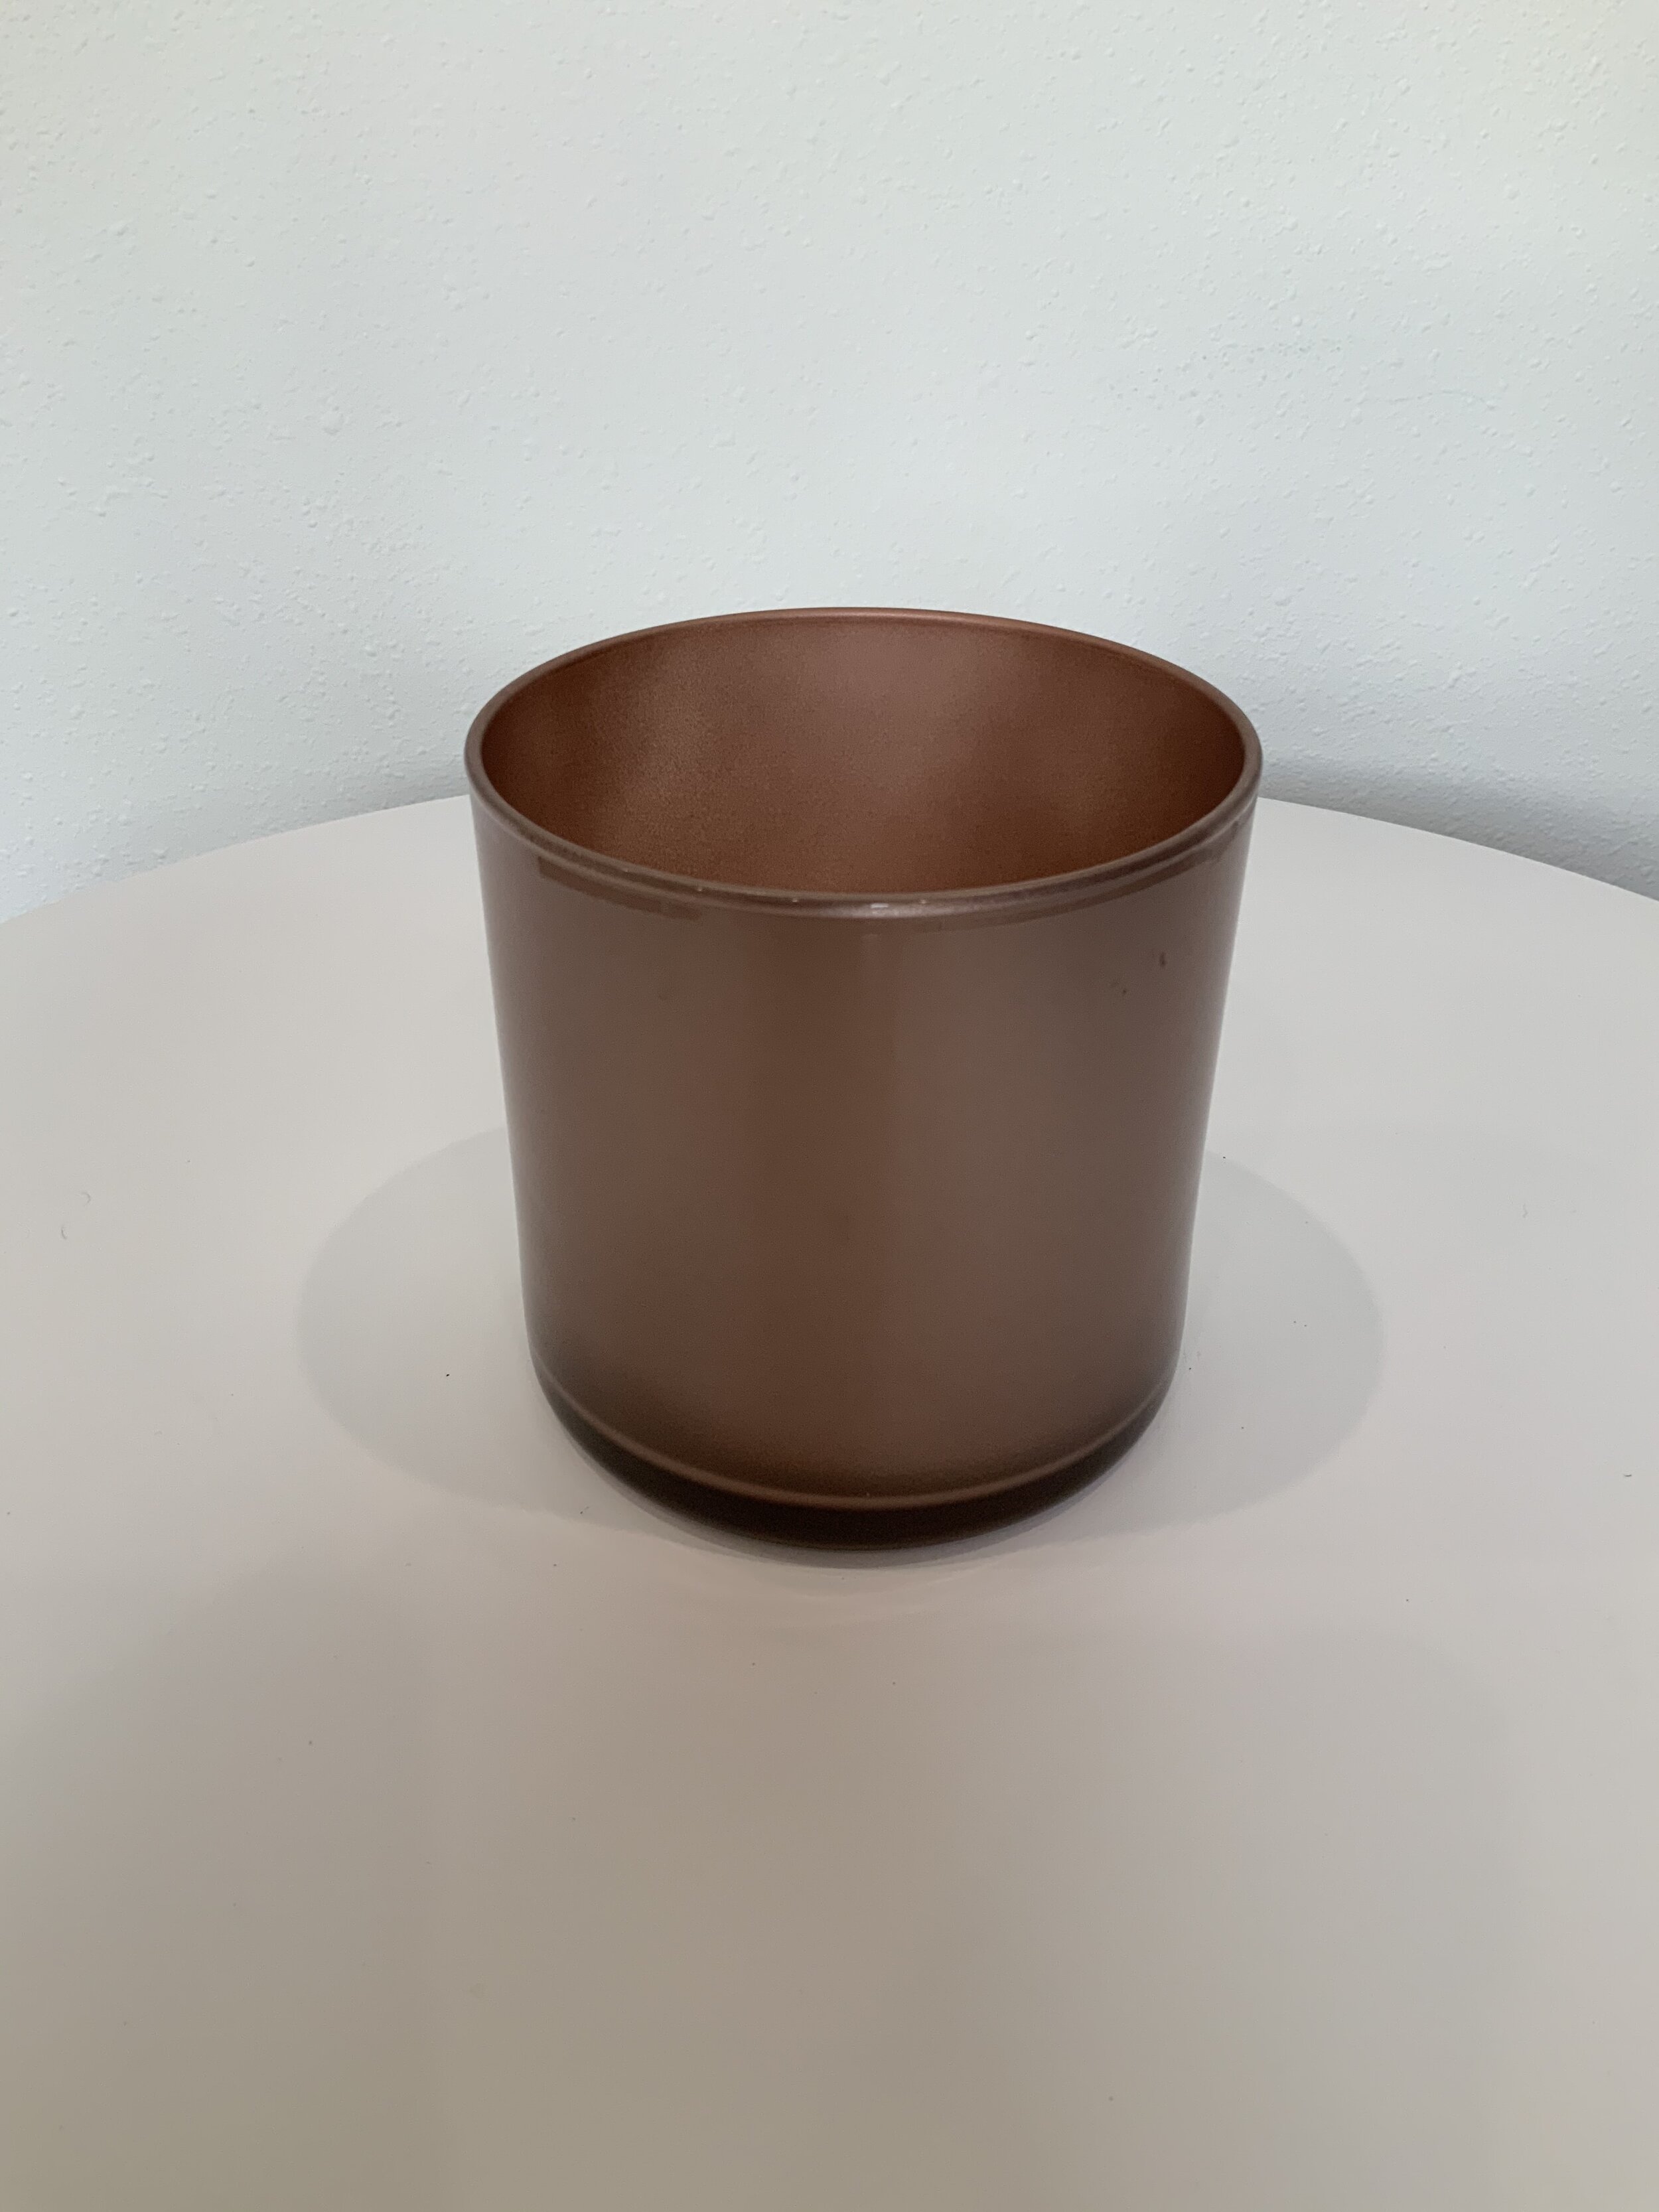 Rose cylinder vase 5_x5_ $6 (12).jpg